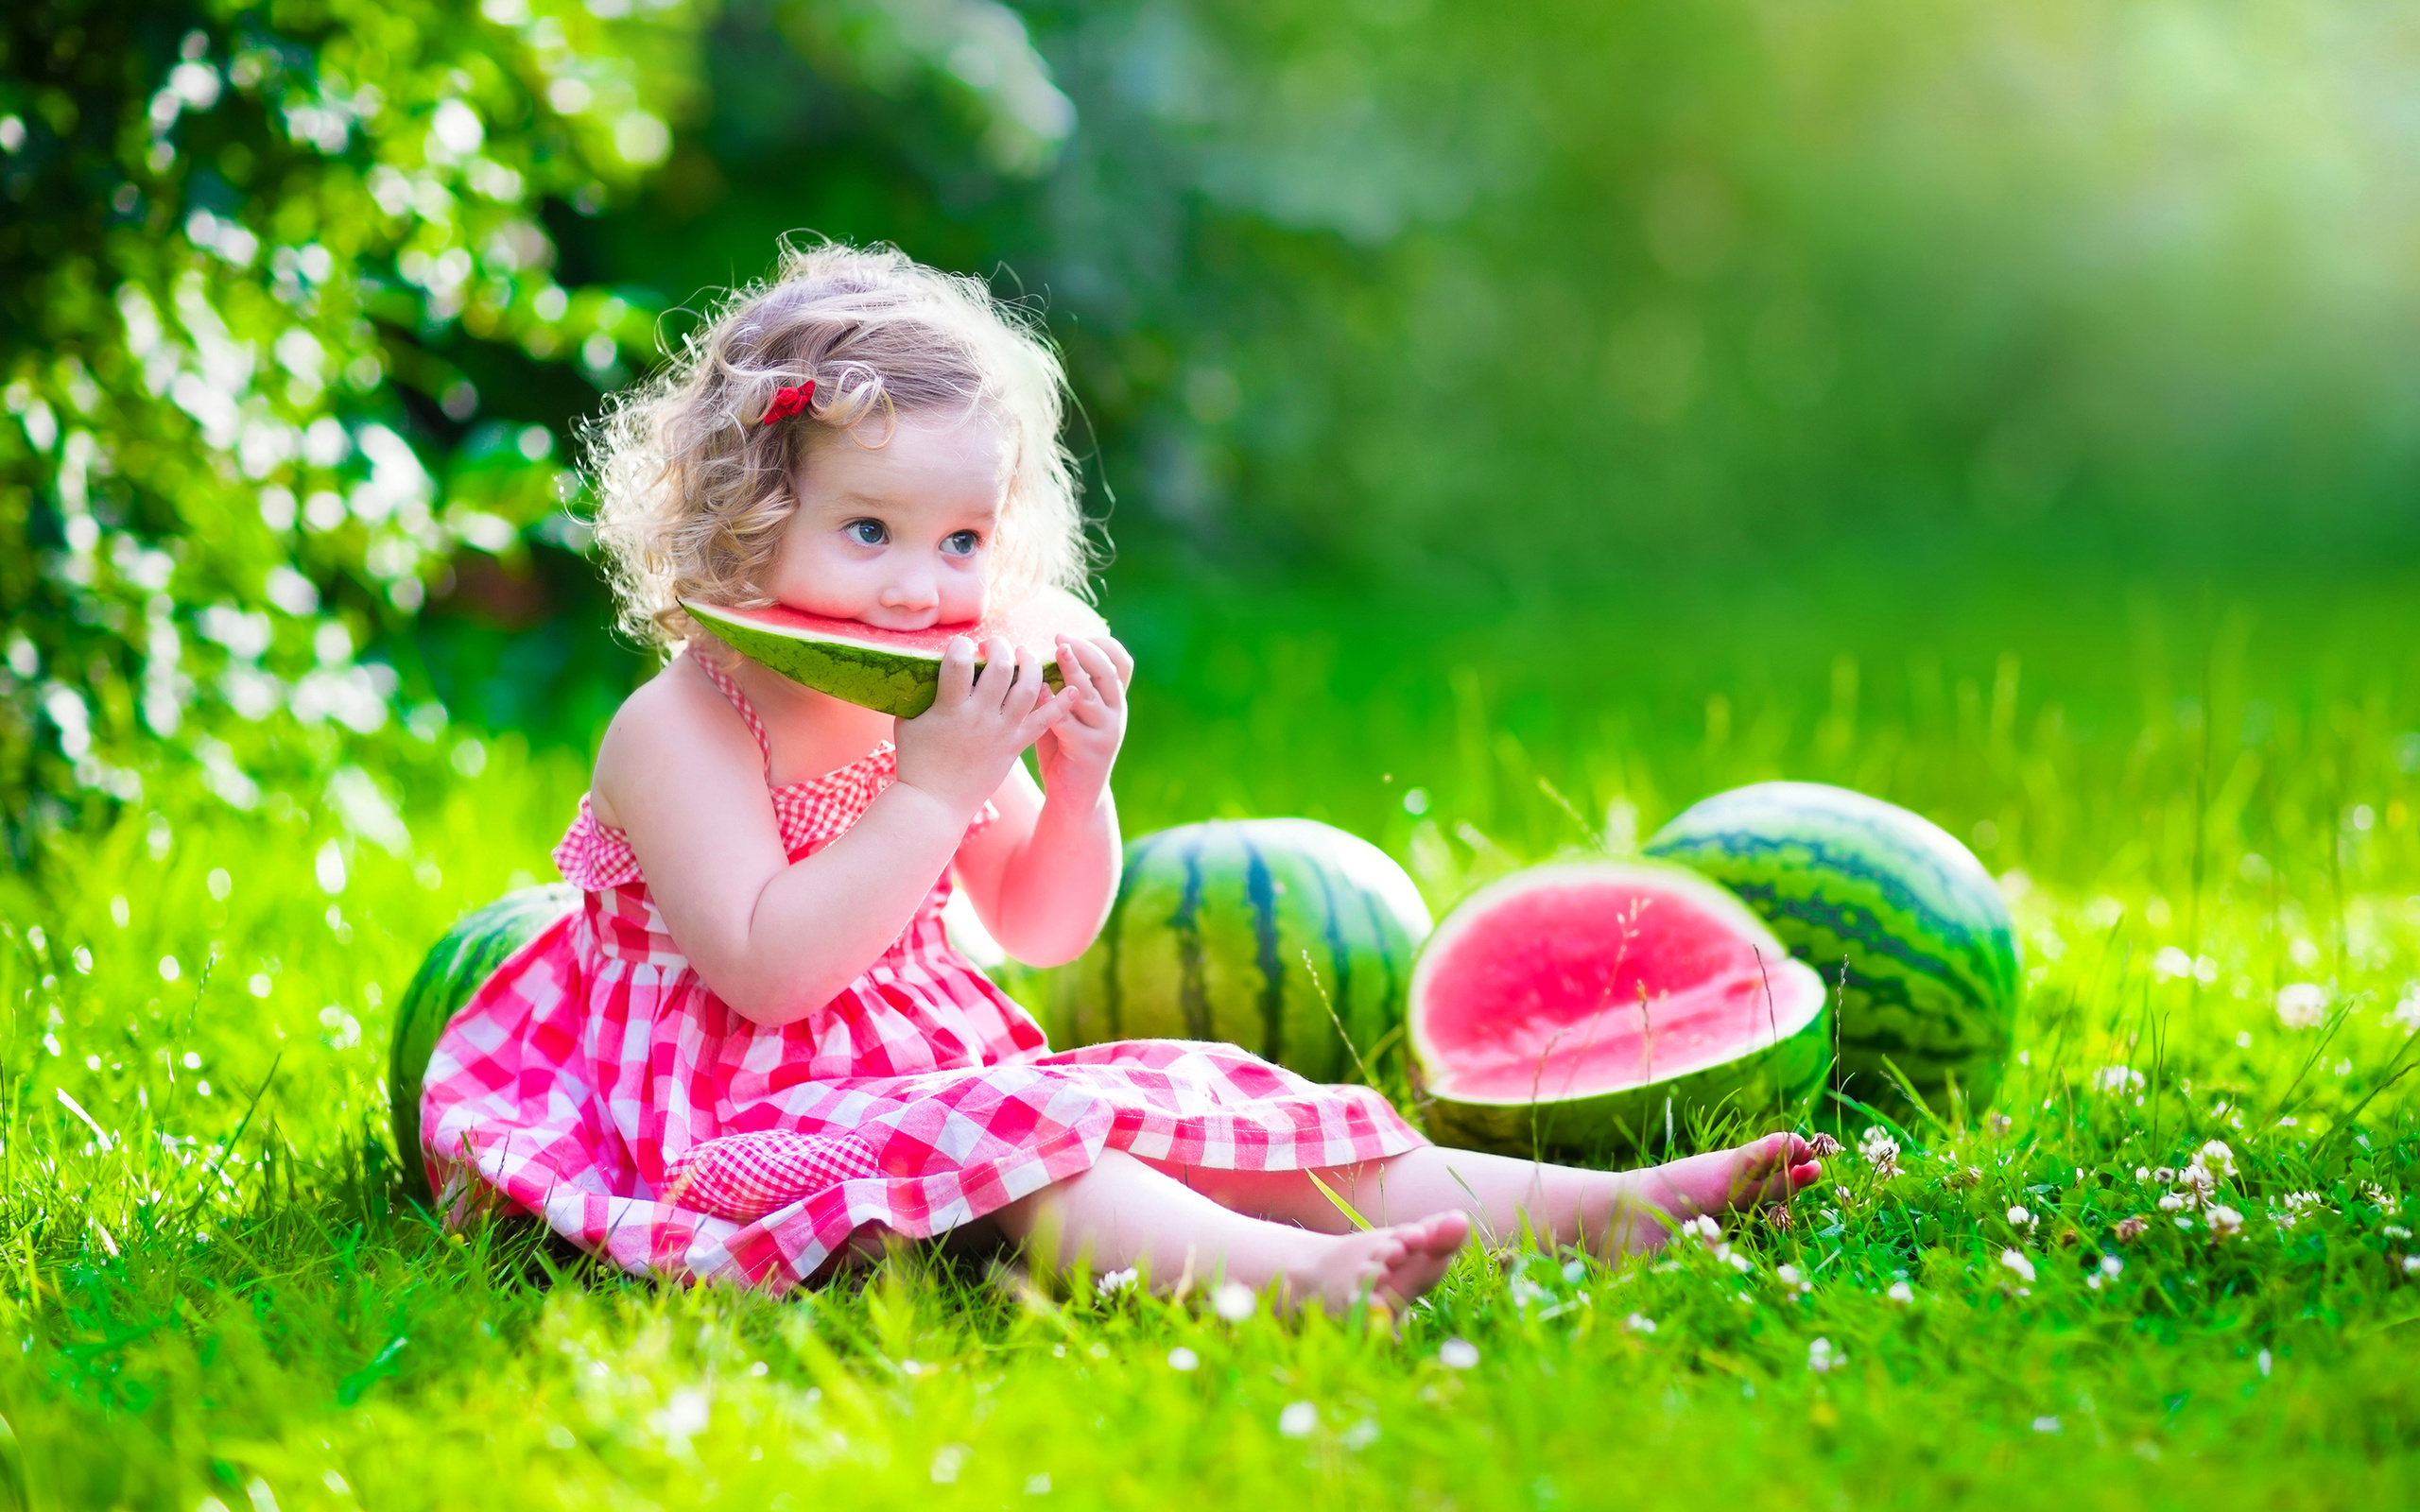 Little Girl Eating Watermelon